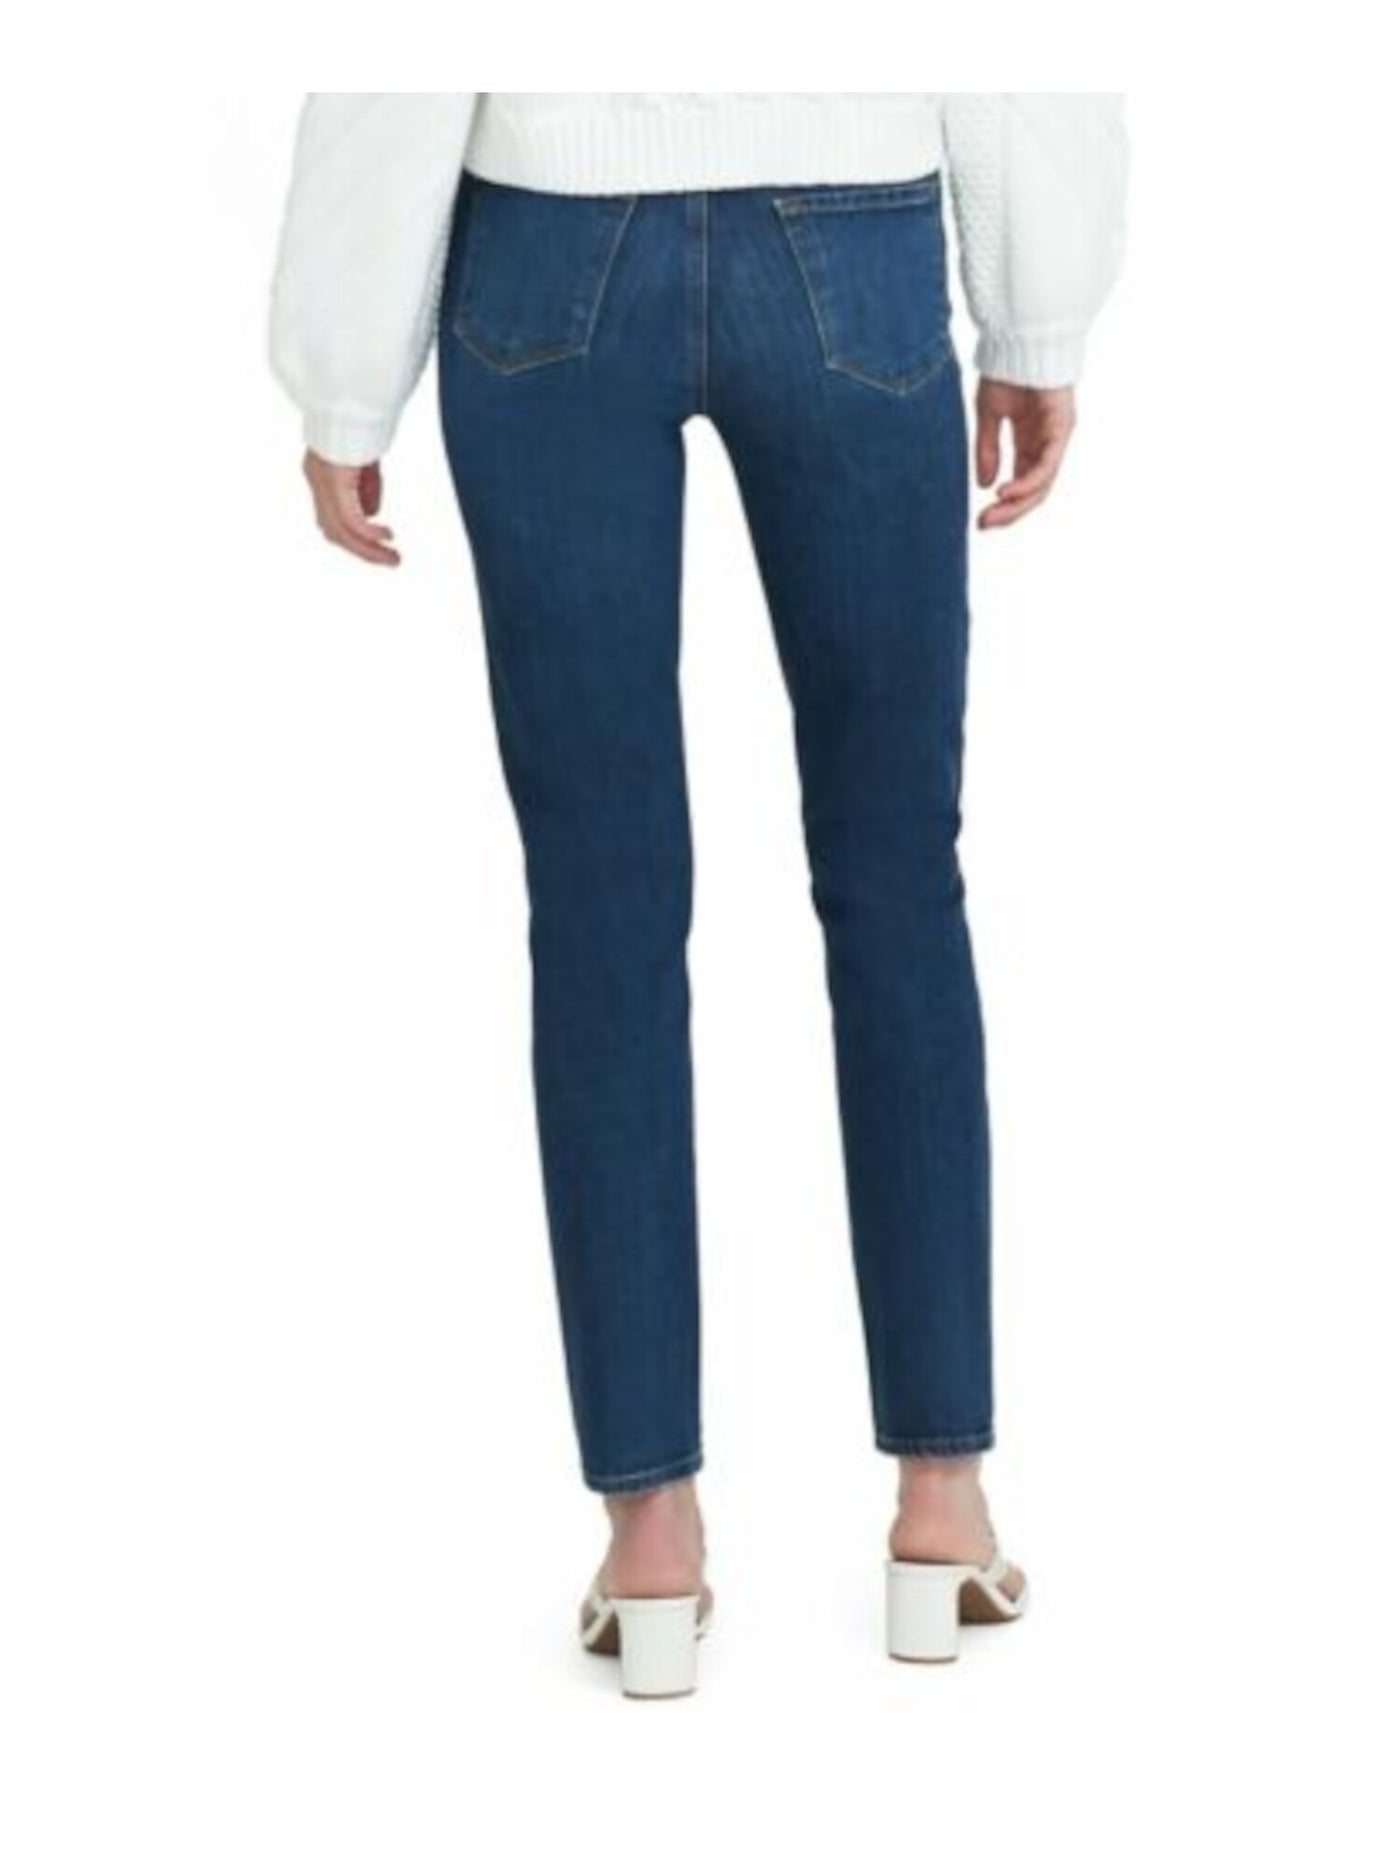 J BRAND Womens Blue Denim Pocketed Zippered Straight High Waist Jeans Juniors 27